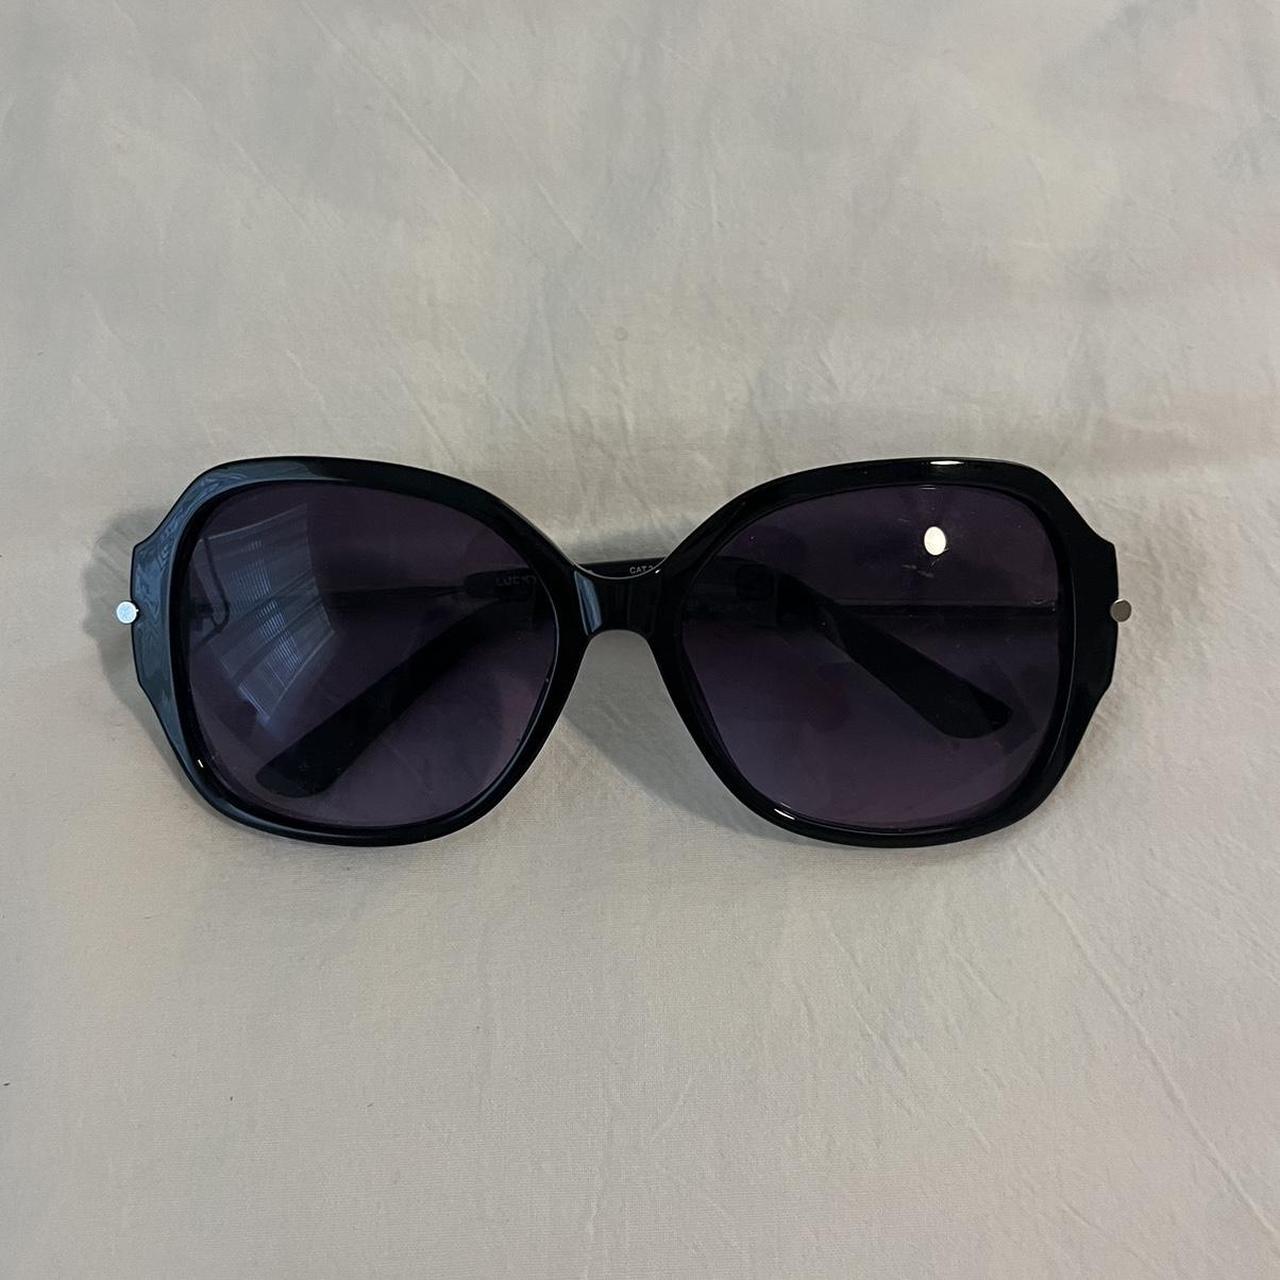 lucky brand sunglasses - Depop